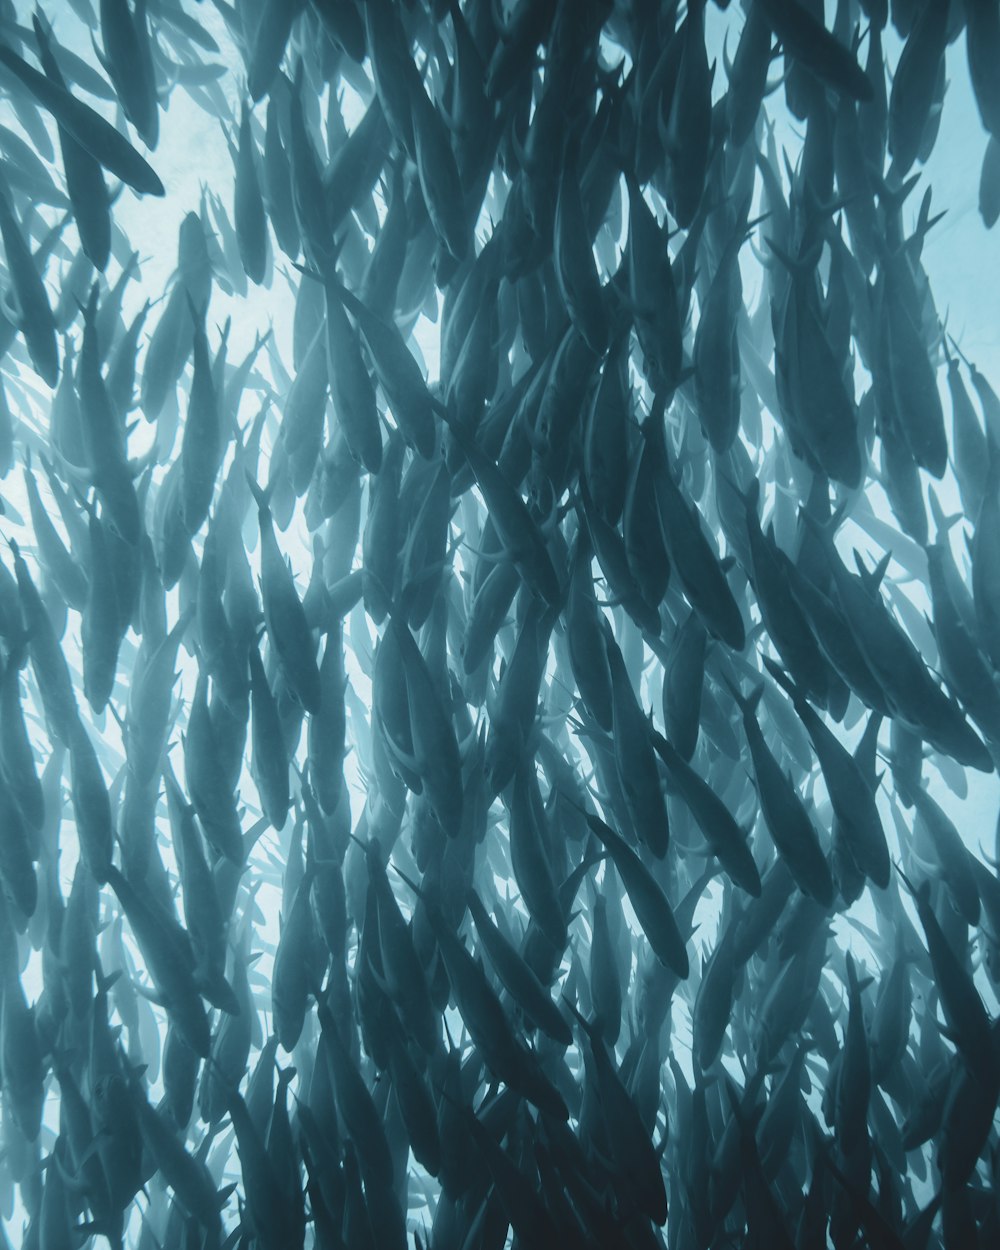 un grand groupe de poissons nageant dans un plan d’eau